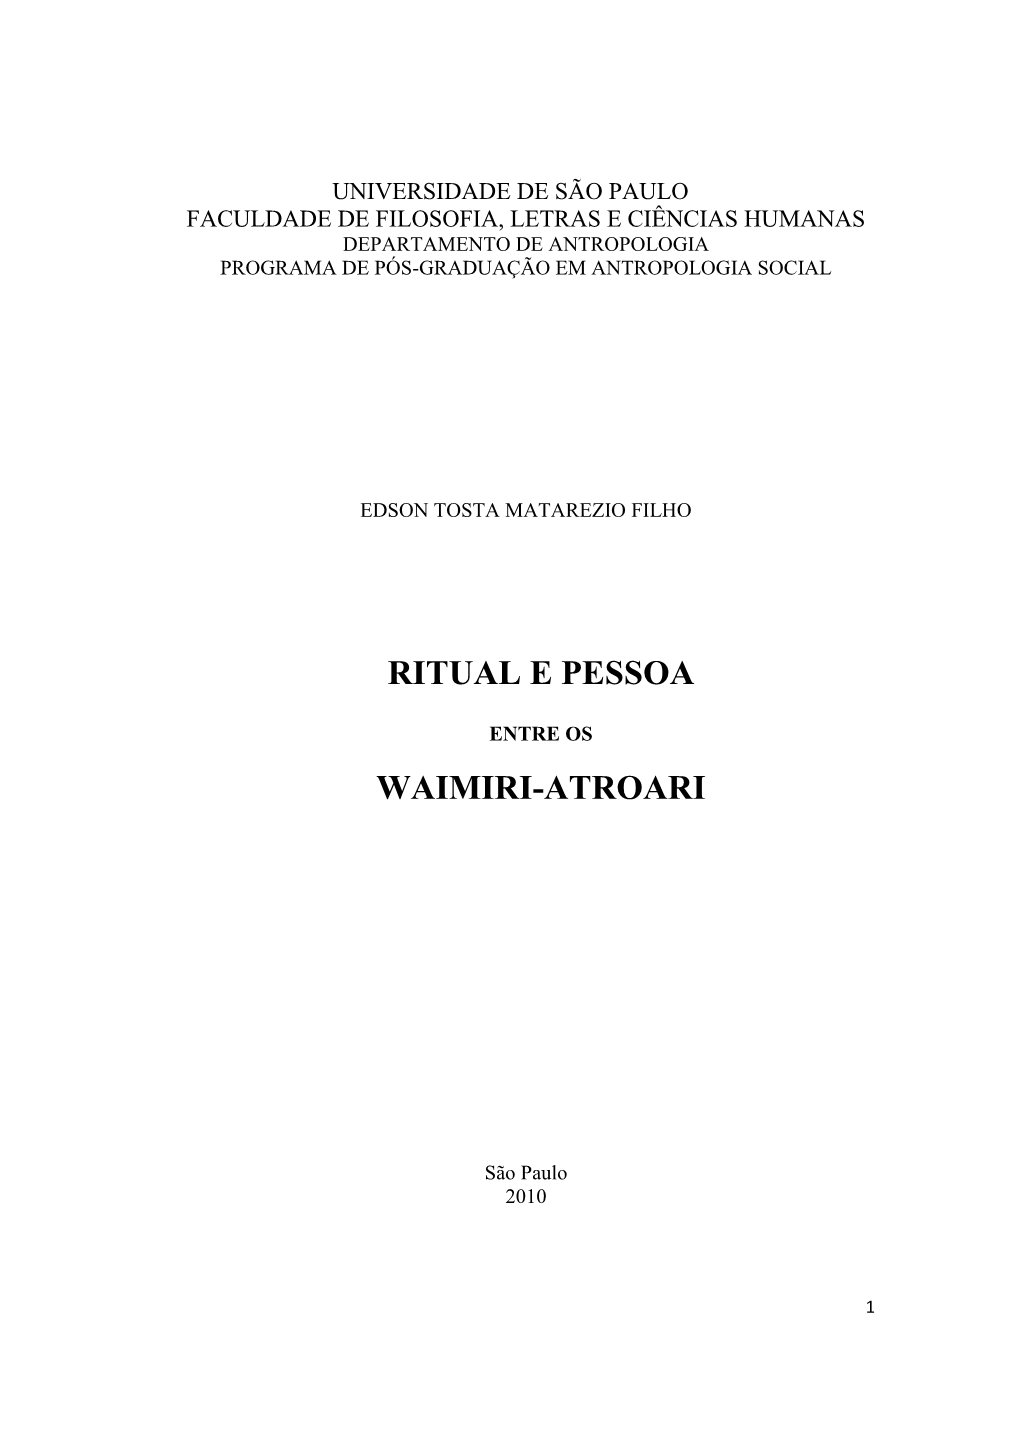 Ritual E Pessoa Waimiri-Atroari